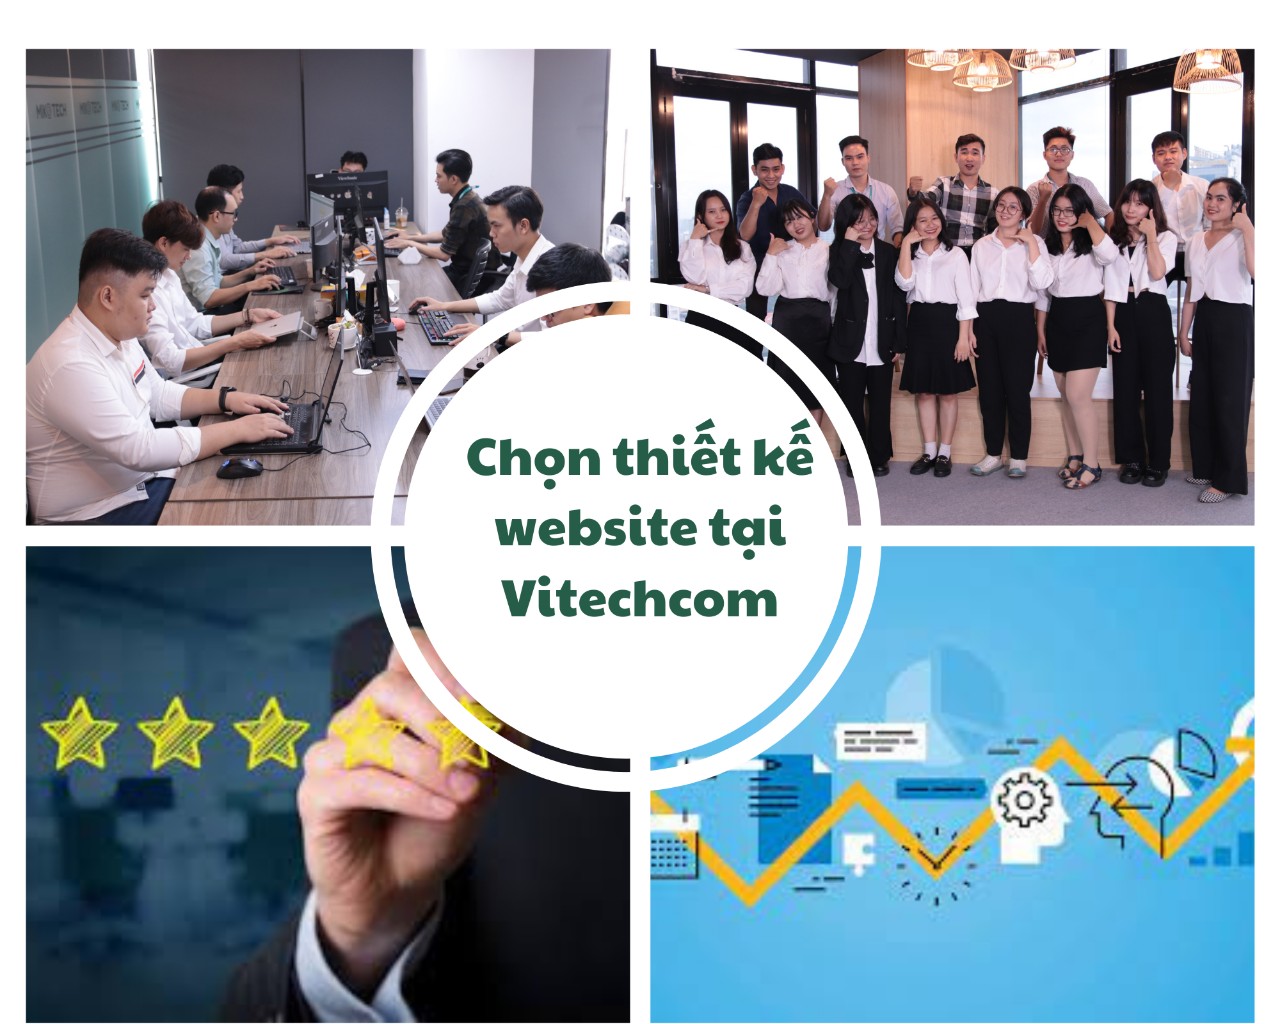 Quyền lợi khi chọn thiết kế website tại Vitechcom